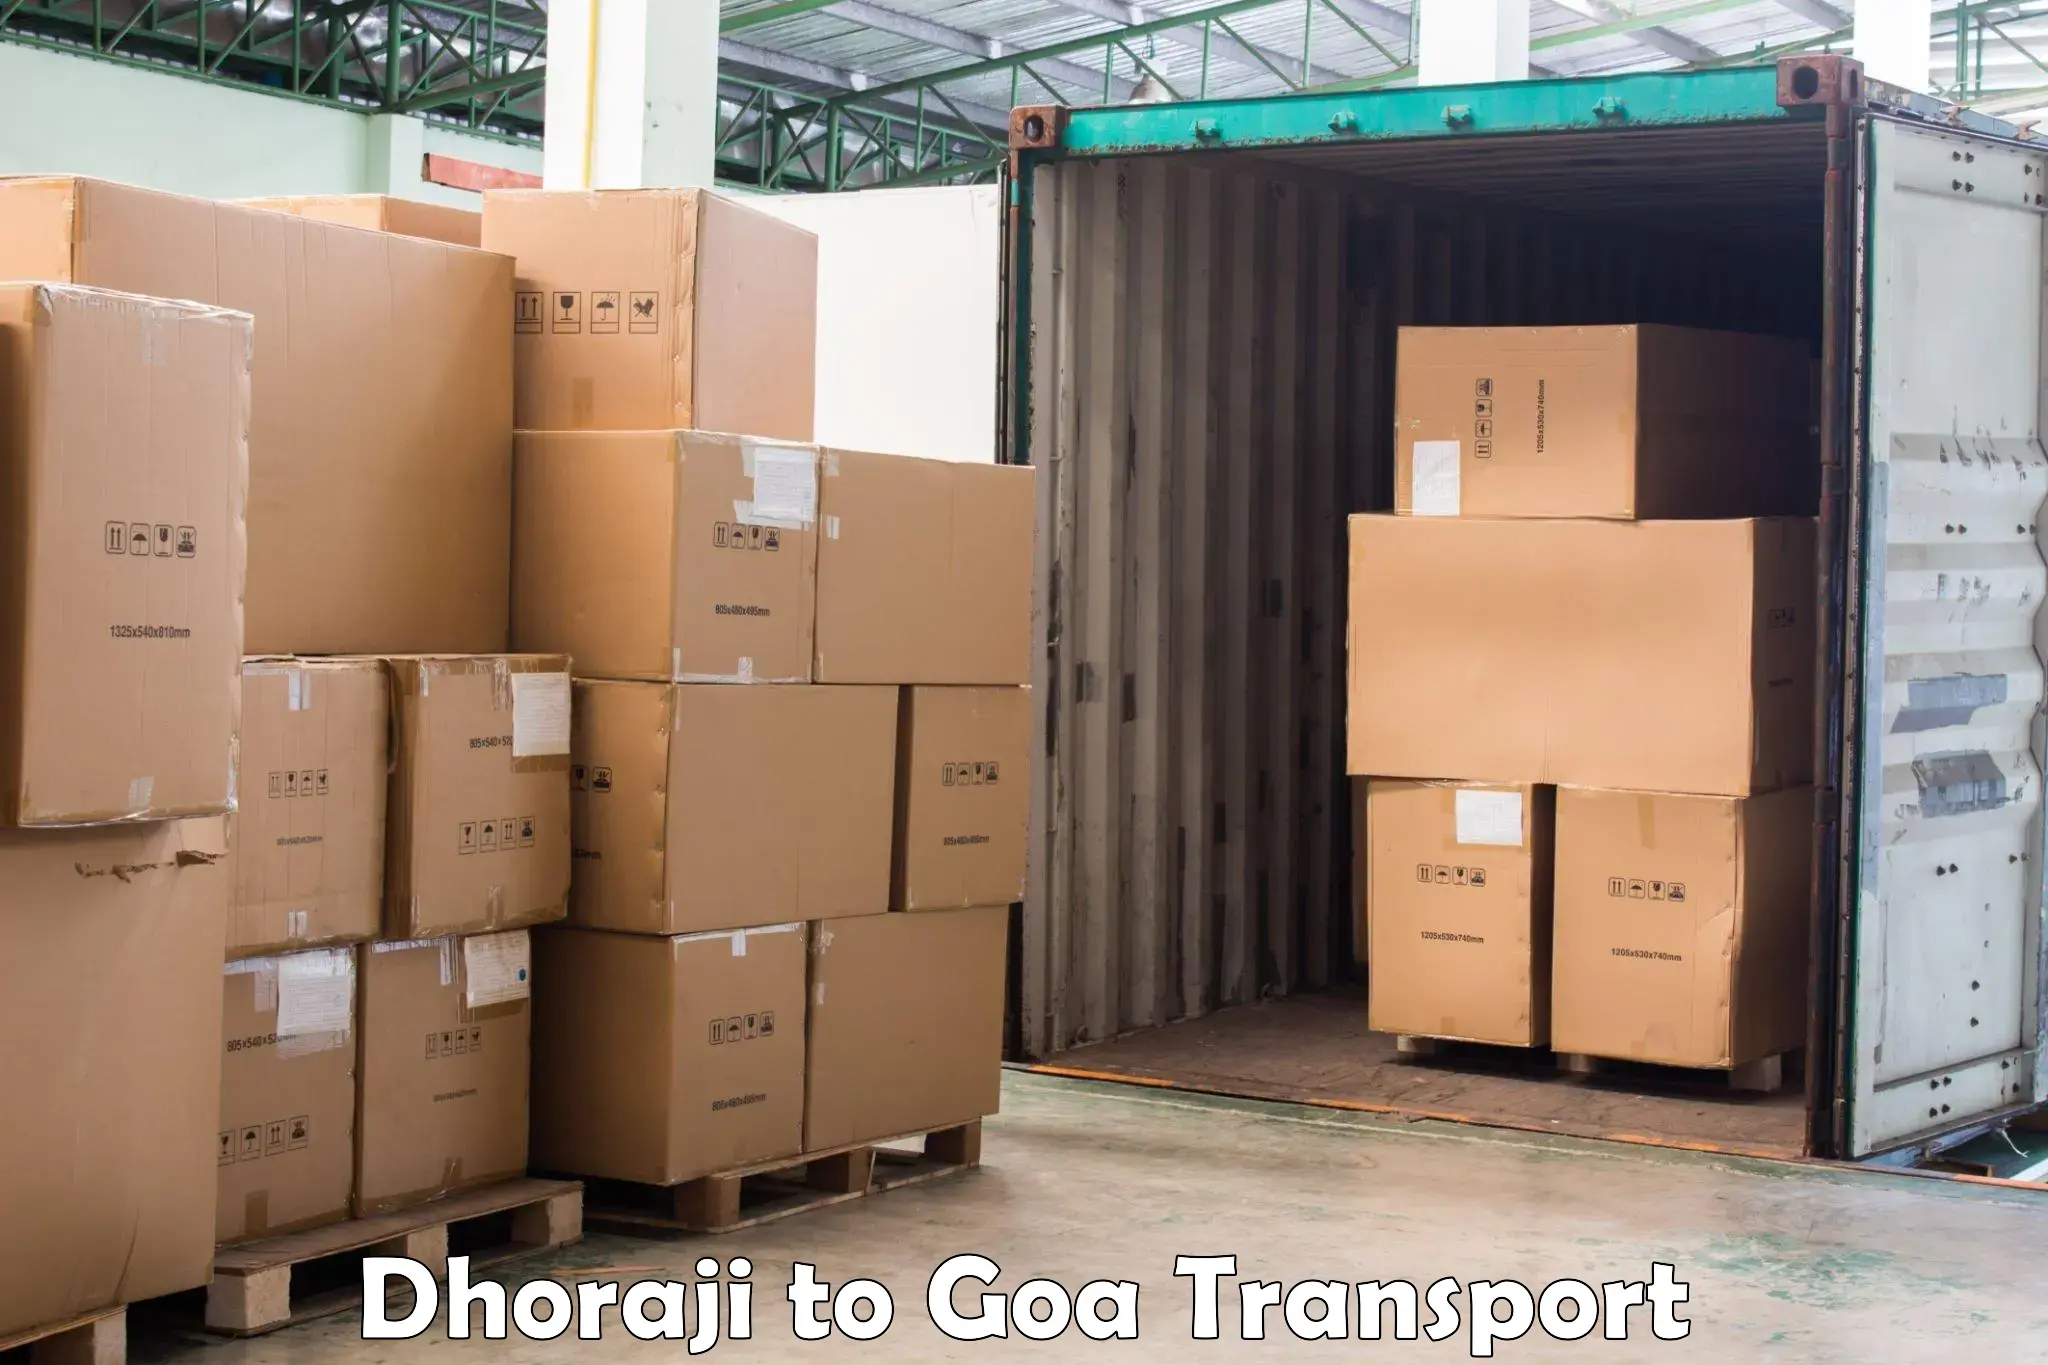 Parcel transport services Dhoraji to Vasco da Gama